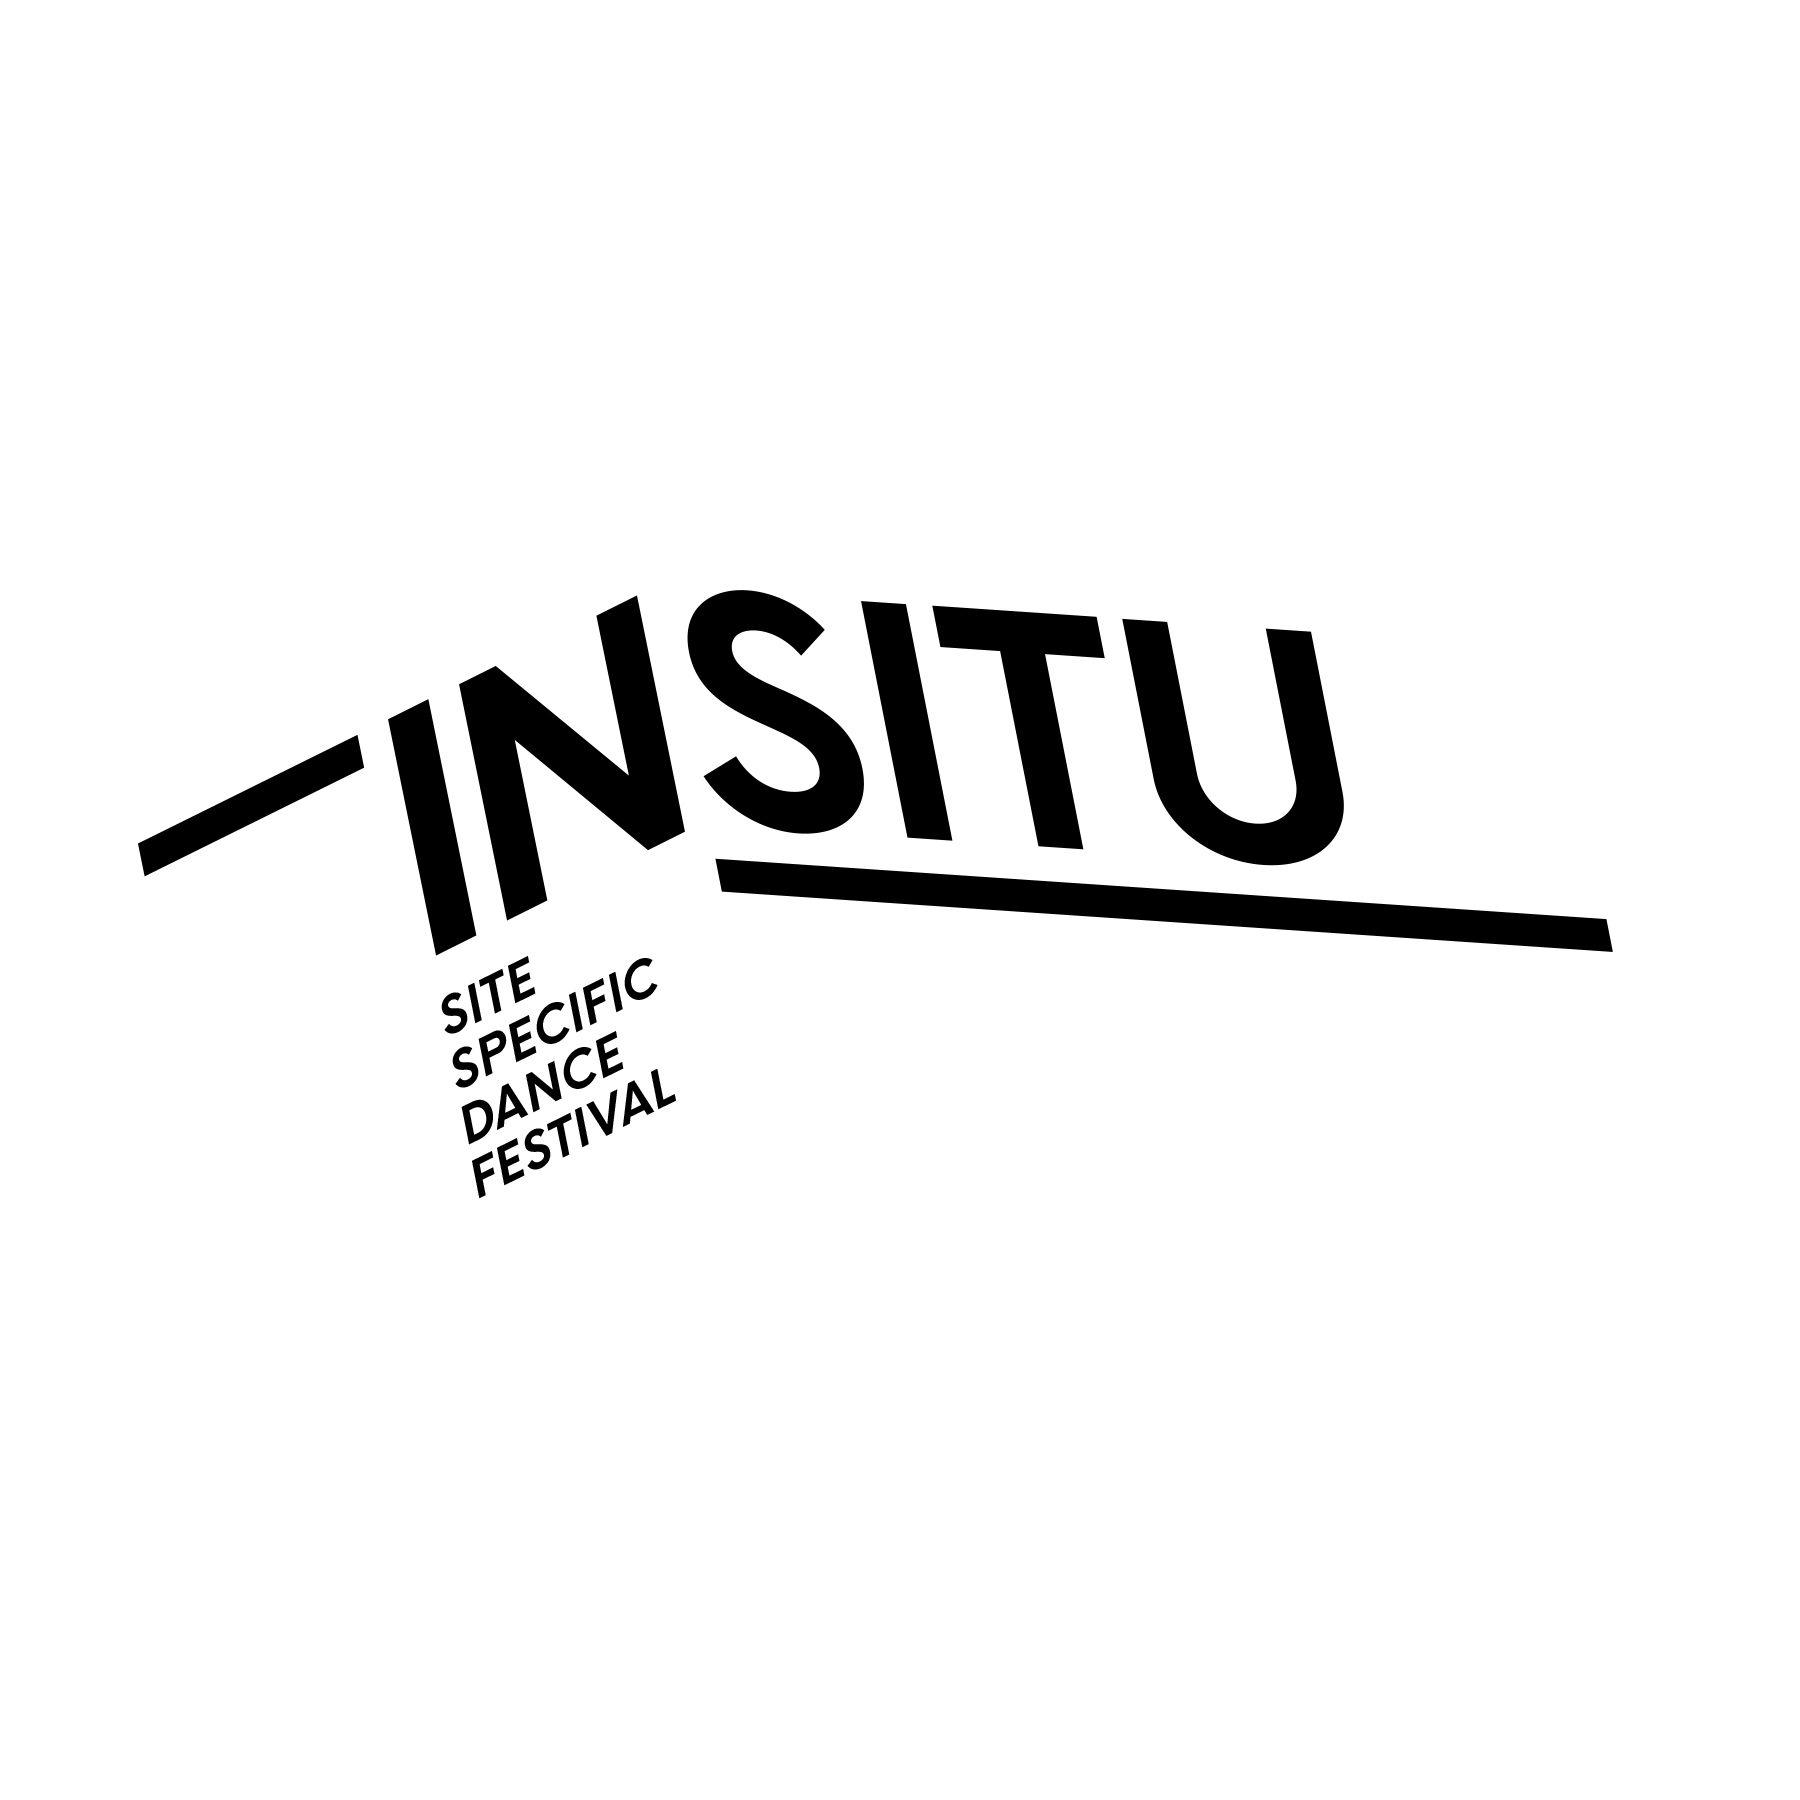 Insitu Logo - Insitu Site-Specific Dance Festival Visual Identity